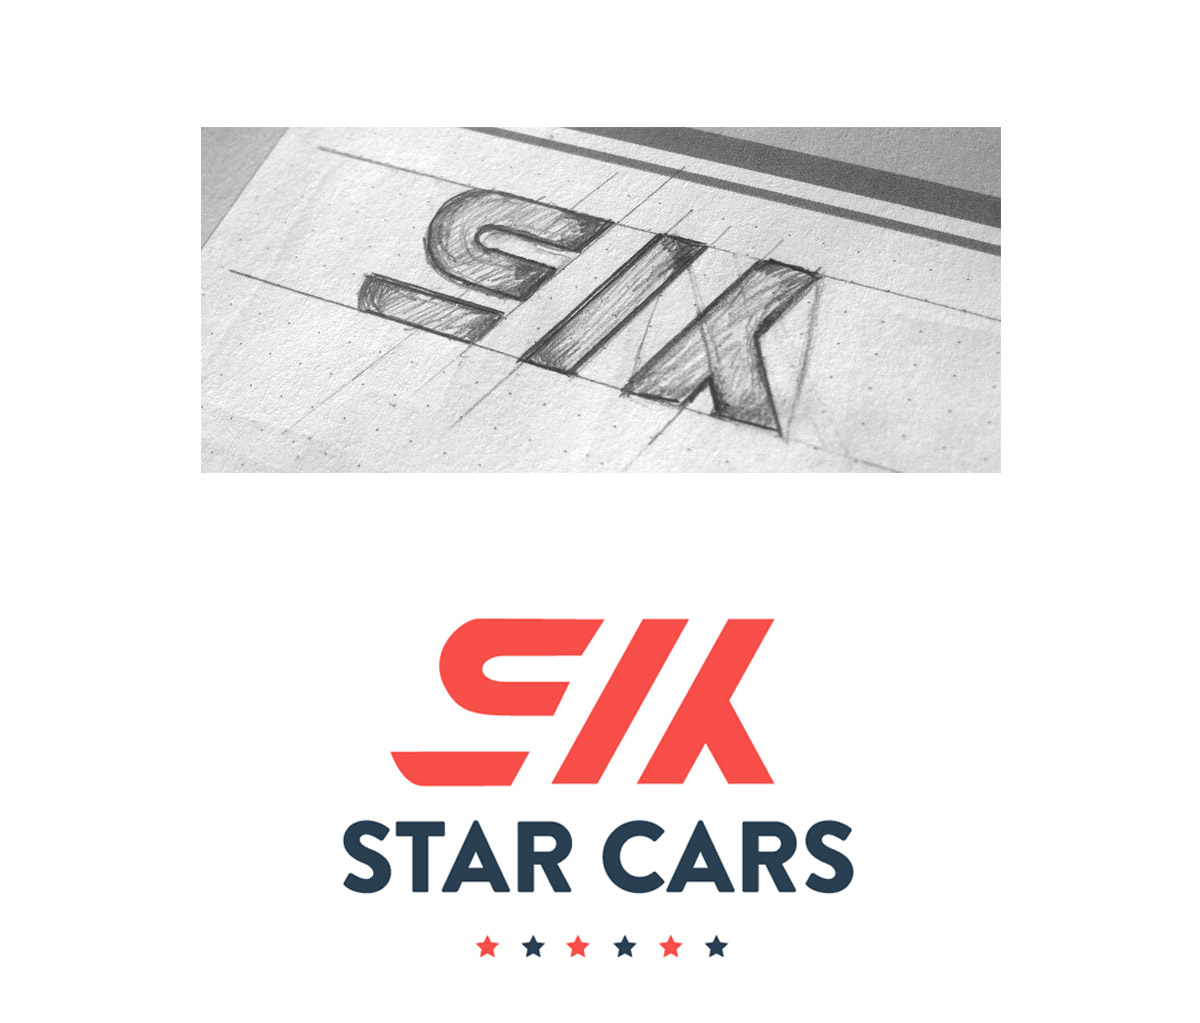 Six Star Cars